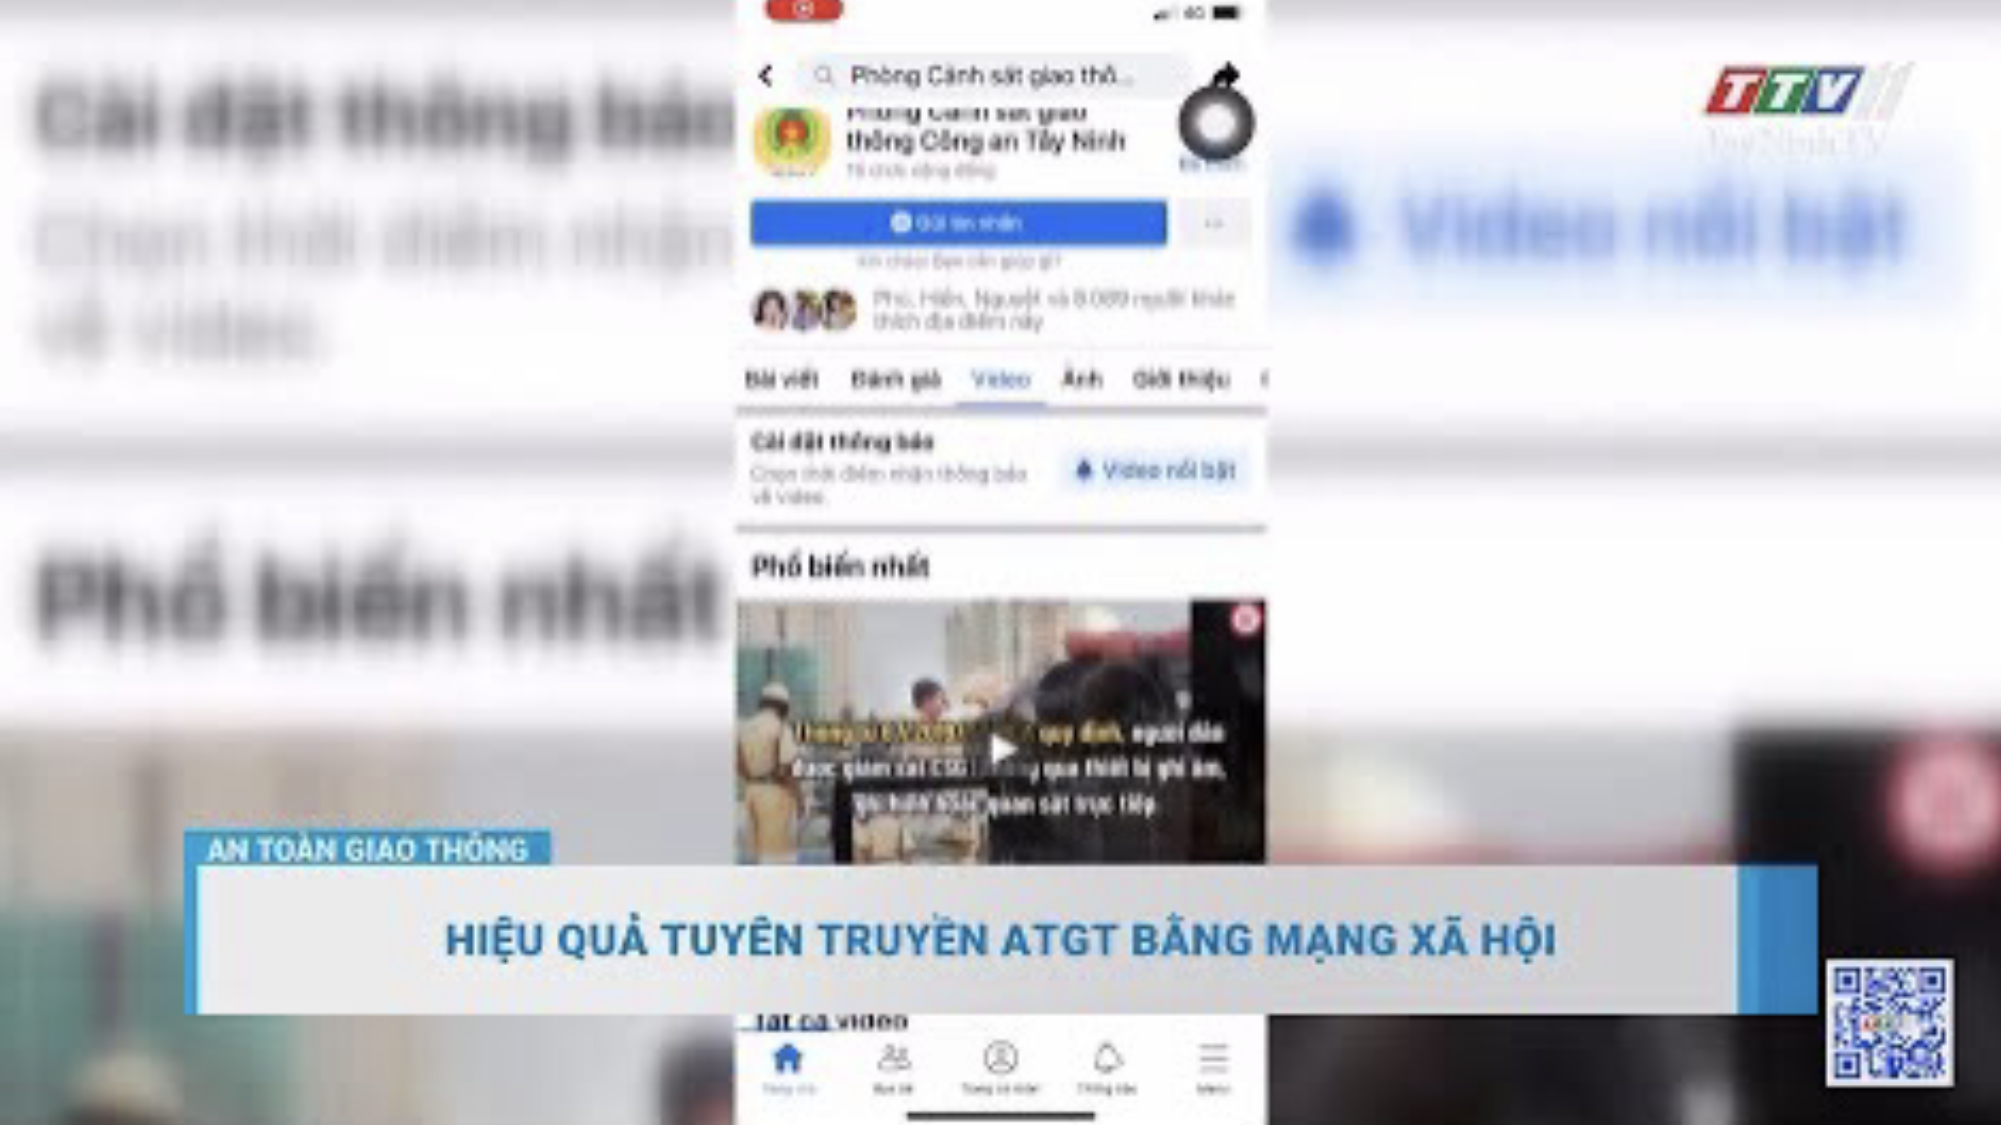 Hiệu quả tuyên truyền ATGT bằng mạng xã hội | AN TOÀN GIAO THÔNG | TayNinhTV